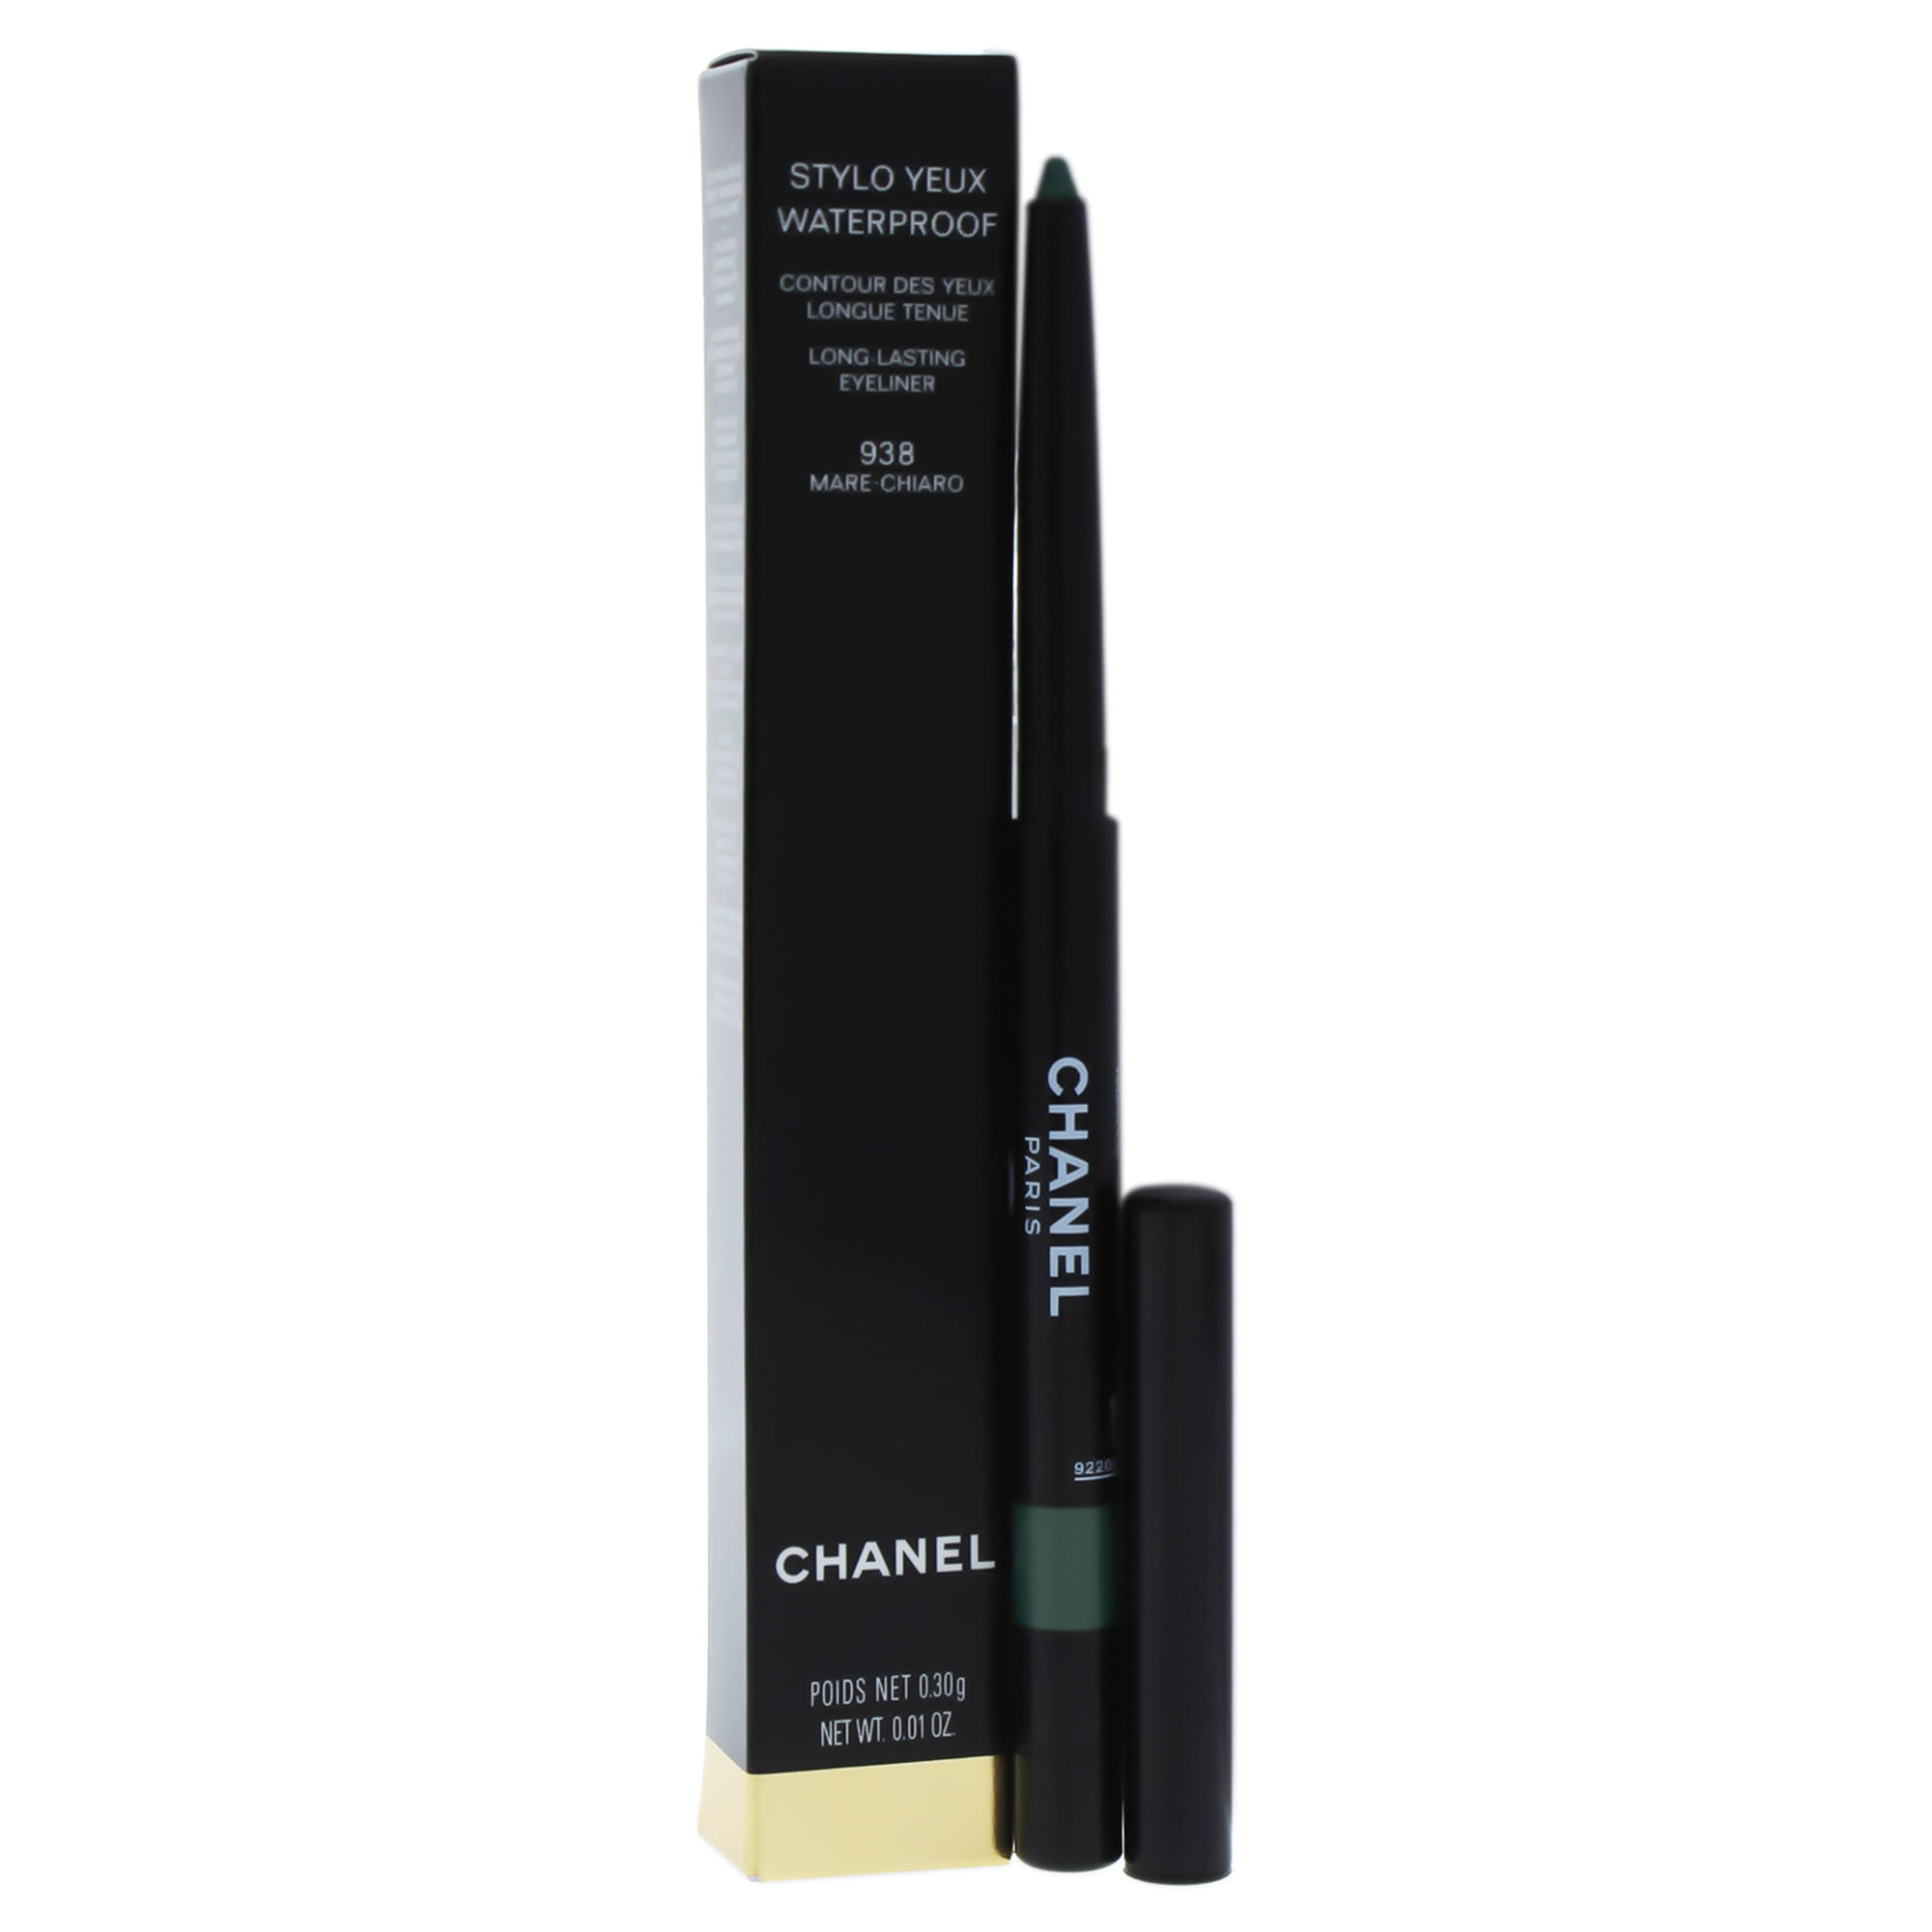 Waterproof Long-Lasting Eyeliner - 938 Mrechiaro by Chanel for Women - 0.01 oz - Walmart.com